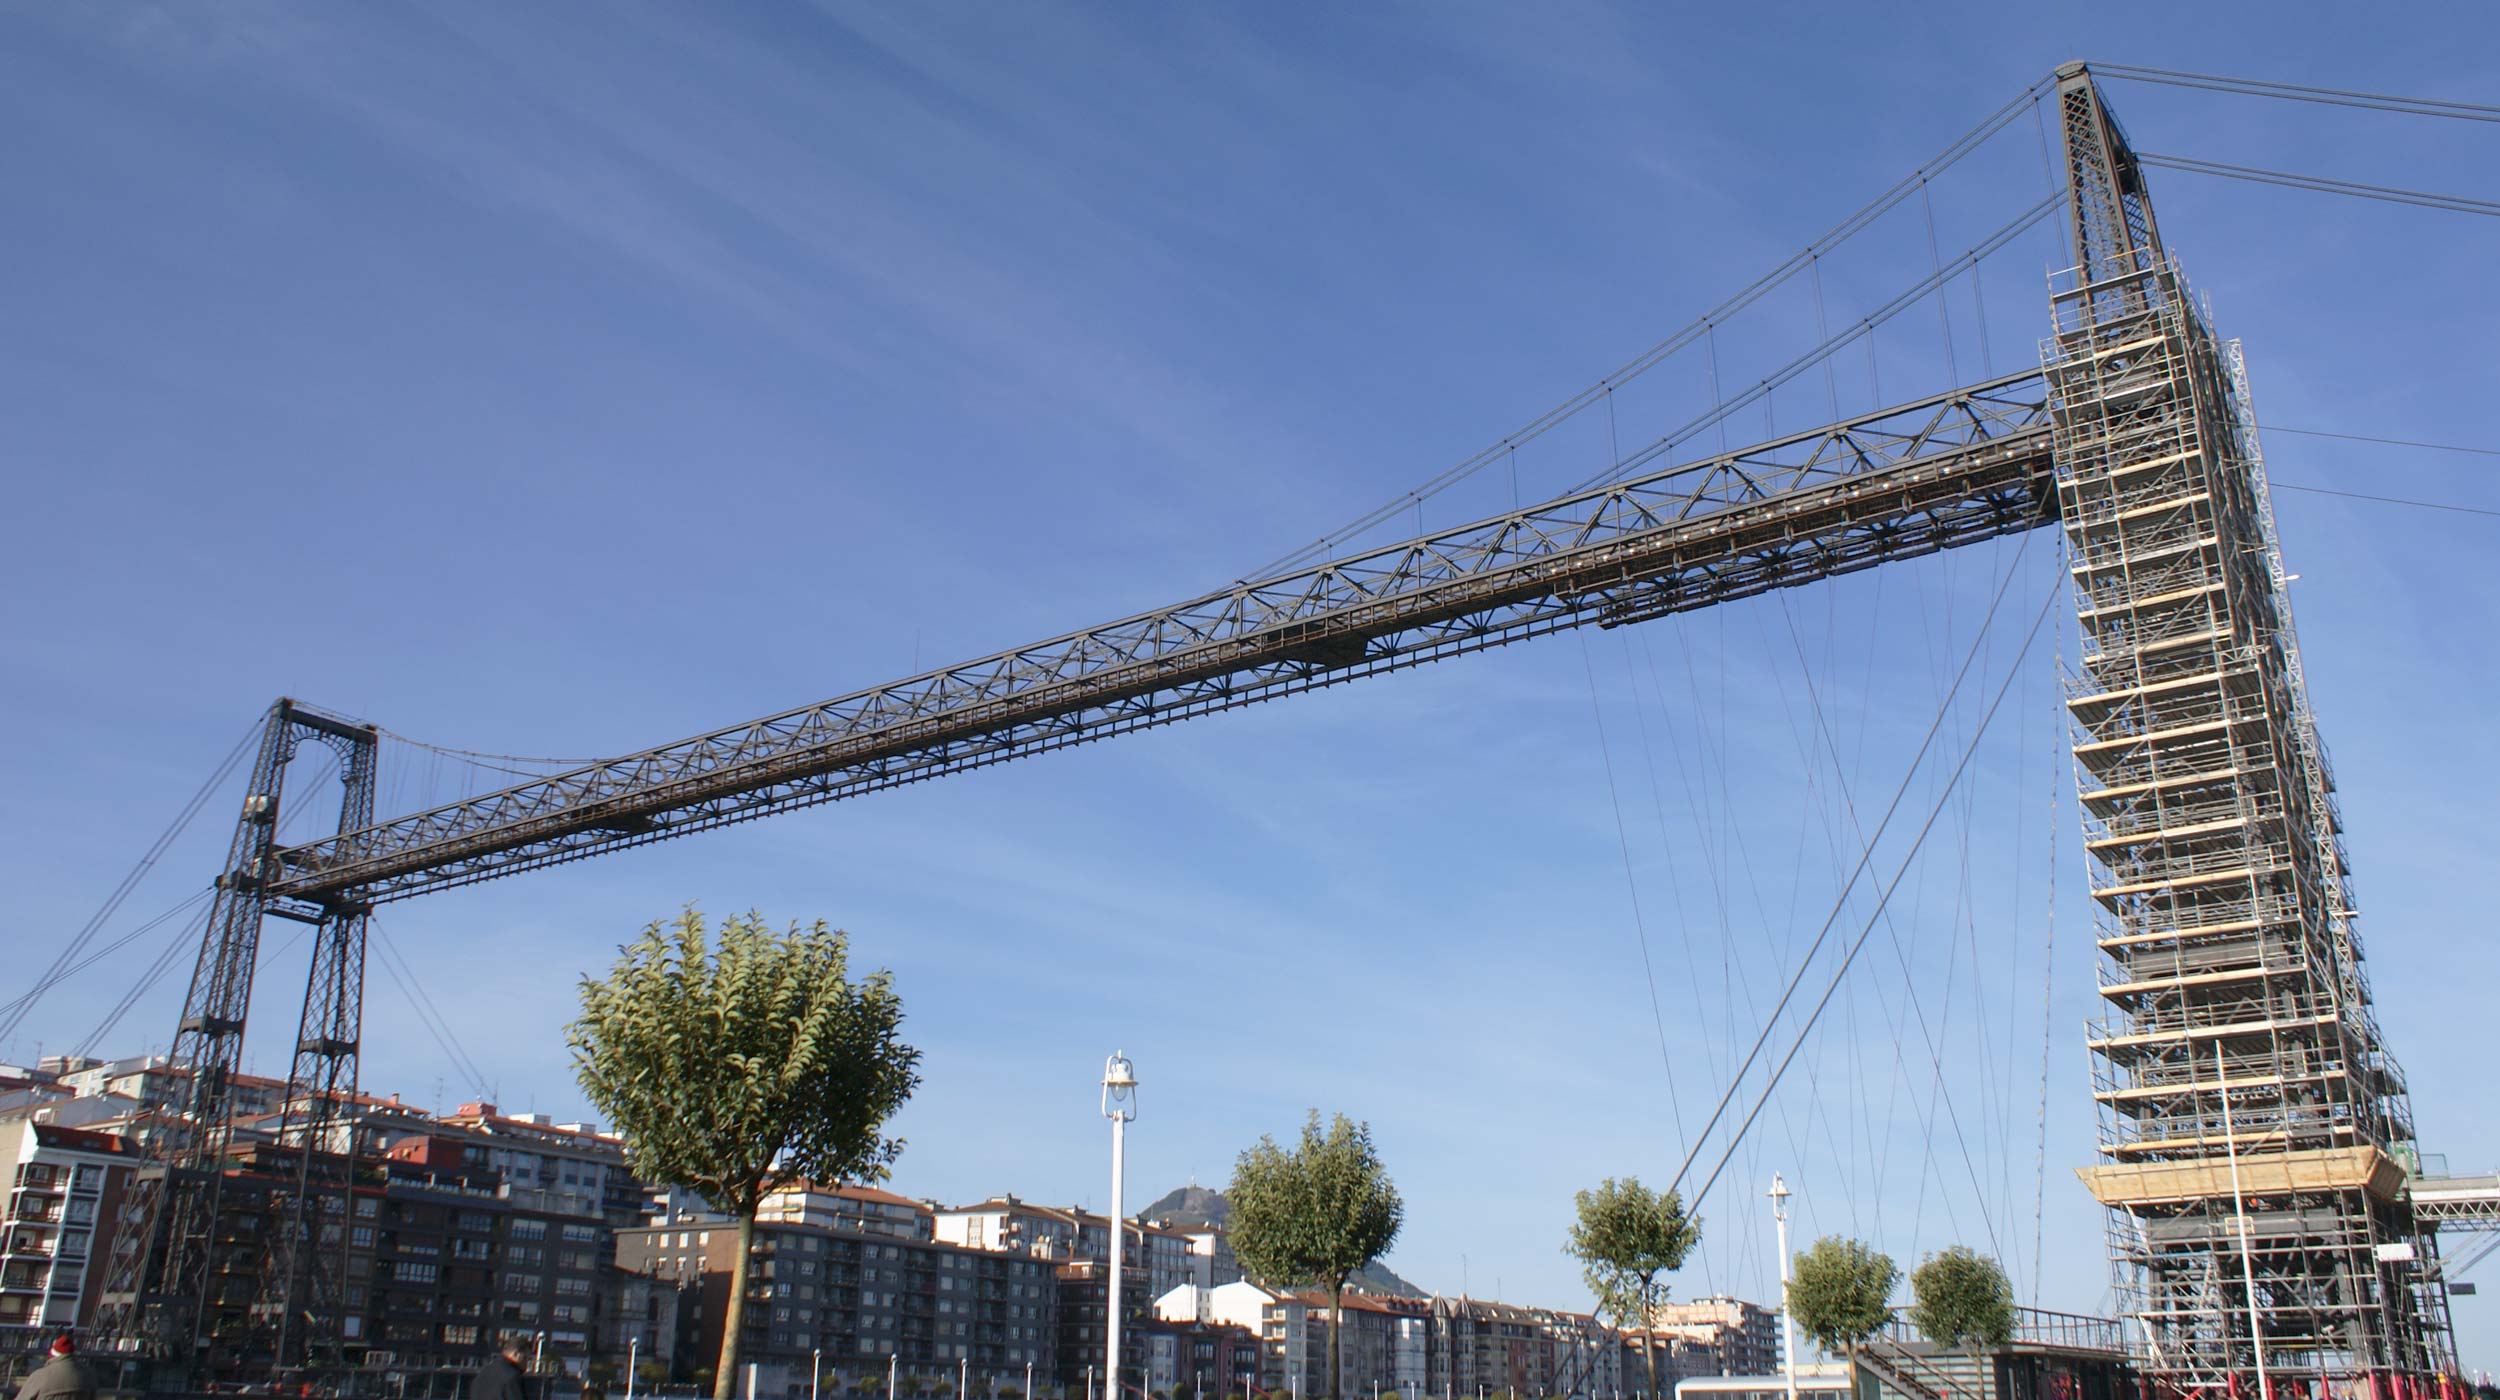 Reductor Extranjero Personas con discapacidad auditiva Rehabilitación del Puente Colgante de Bizkaia, Bilbao, España | ULMA